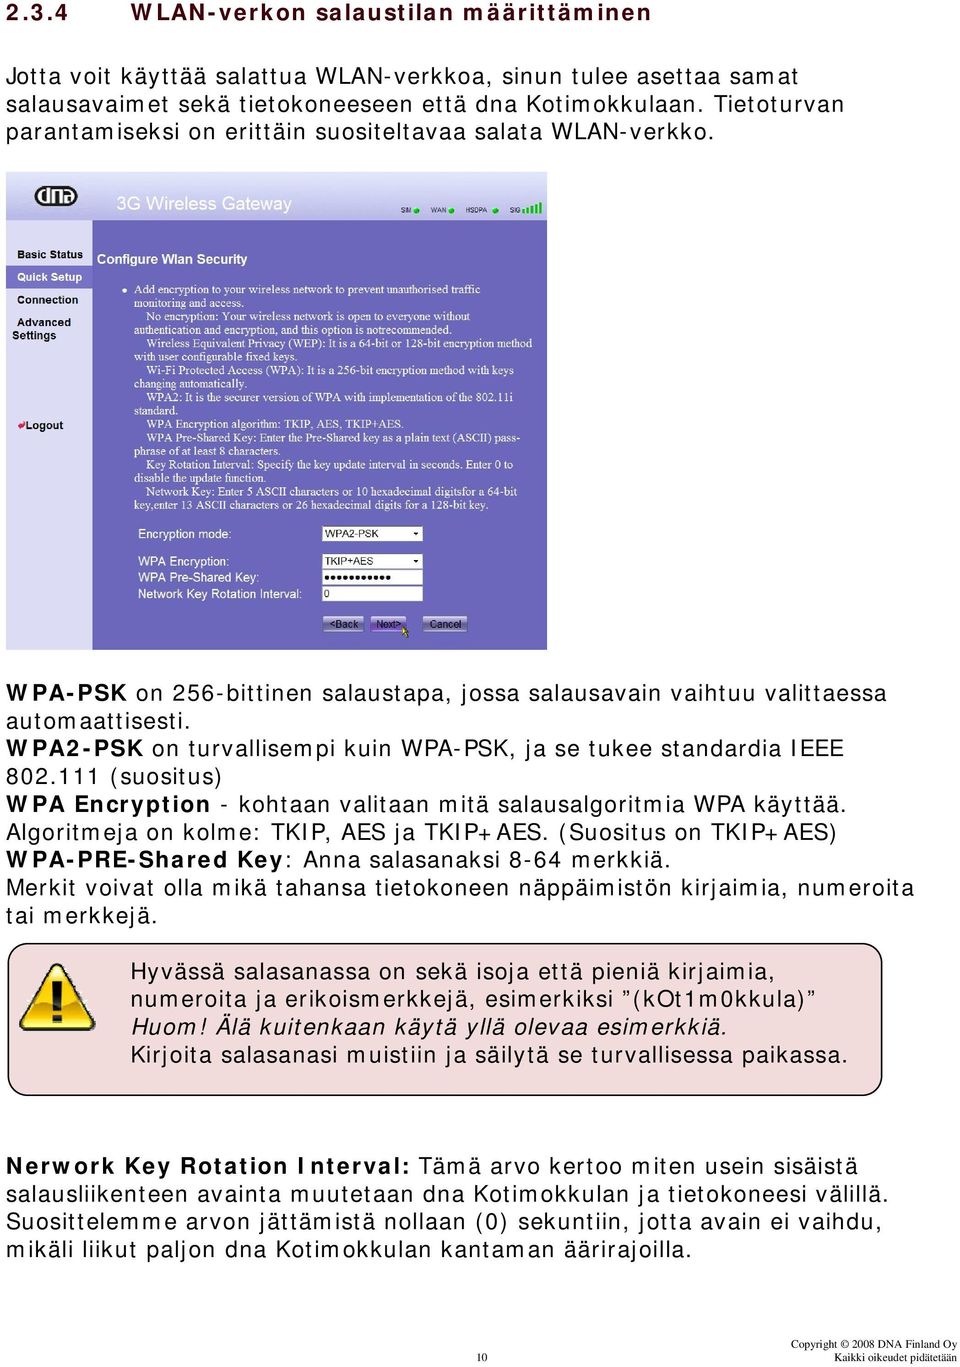 WPA2-PSK on turvallisempi kuin WPA-PSK, ja se tukee standardia IEEE 802.111 (suositus) WPA Encryption - kohtaan valitaan mitä salausalgoritmia WPA käyttää. Algoritmeja on kolme: TKIP, AES ja TKIP+AES.